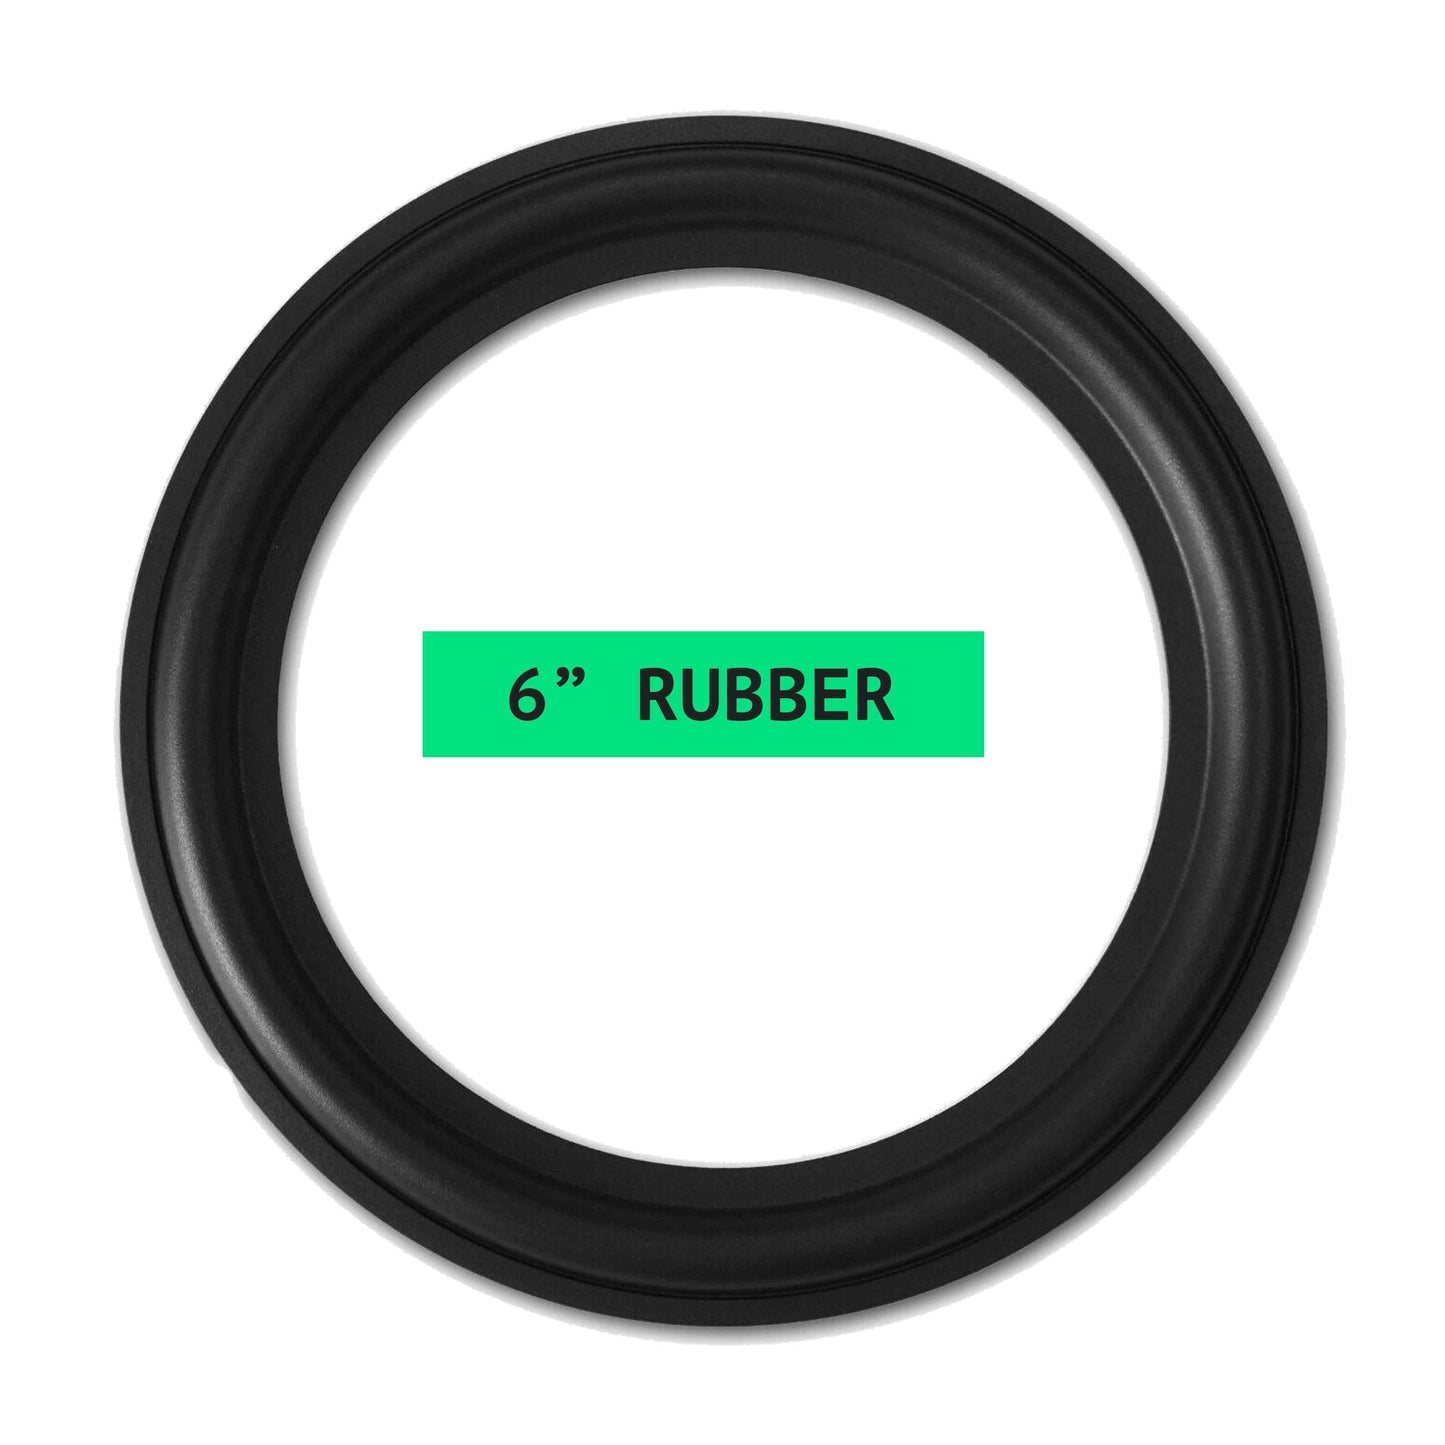 6" Rubber Repair Kit - OD:150MM ID:100MM